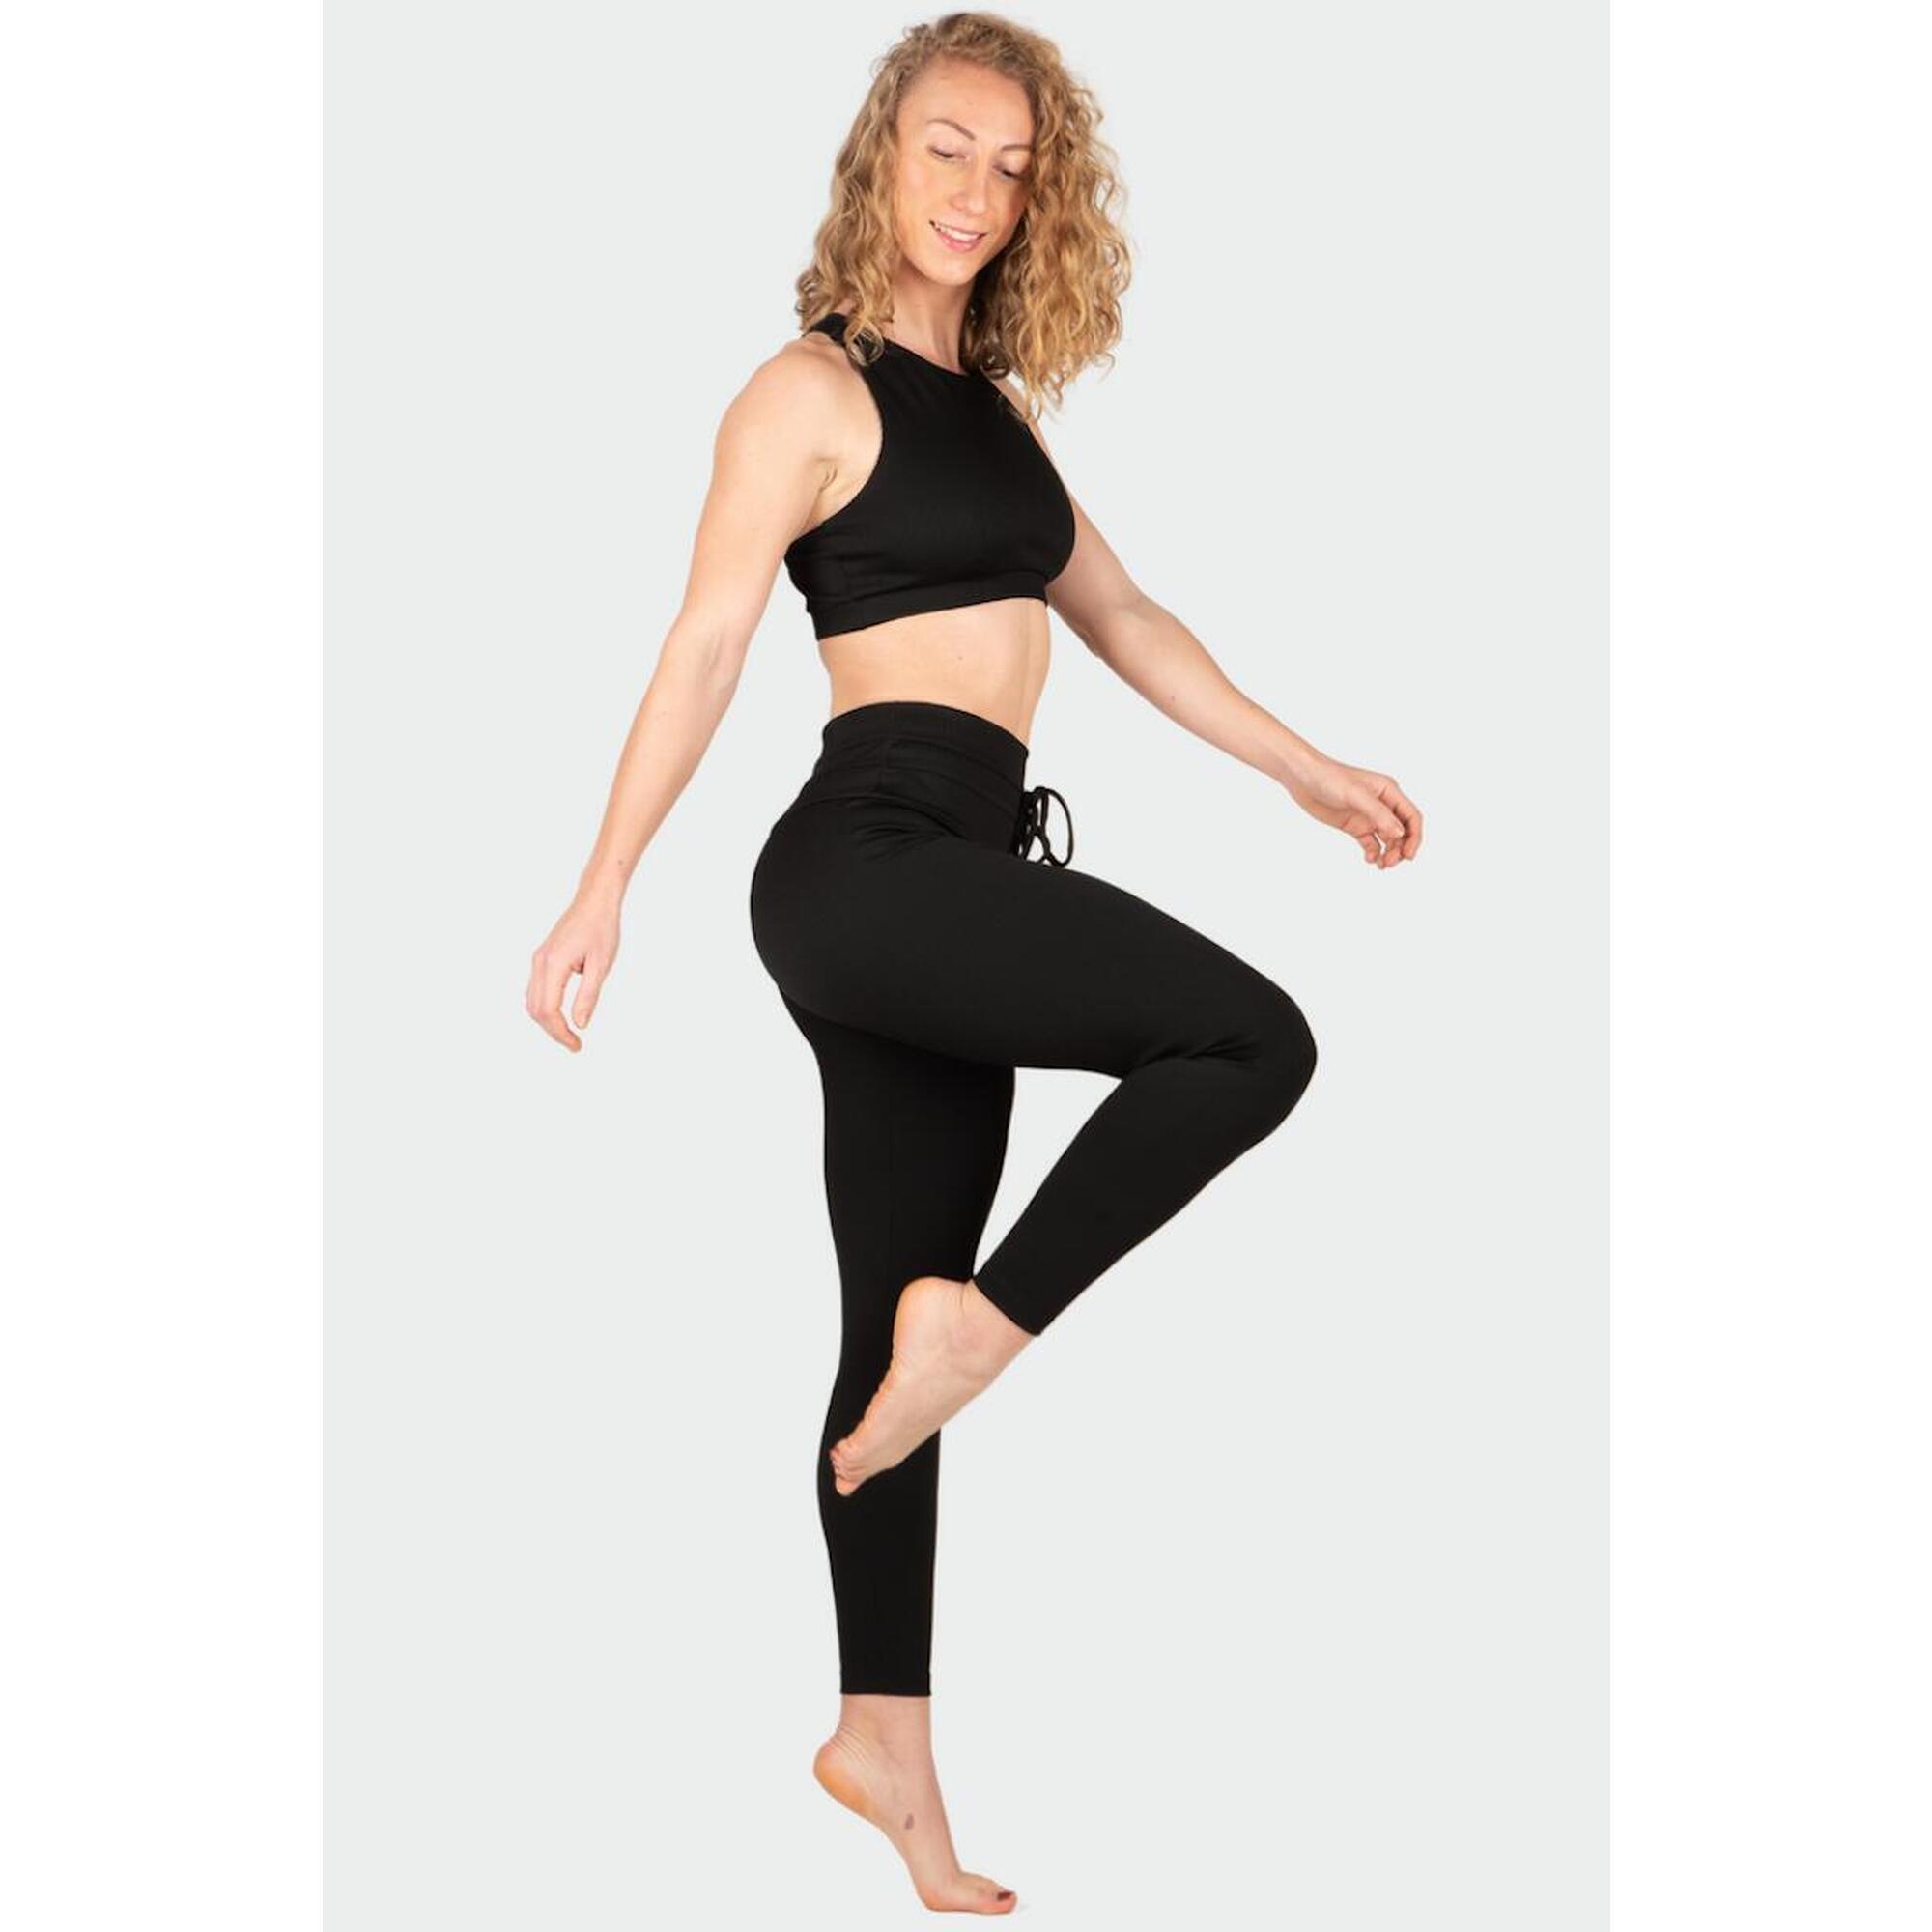 Brassière yoga femme maintien élevé soft touche eco-conçu en fibre biodégradable